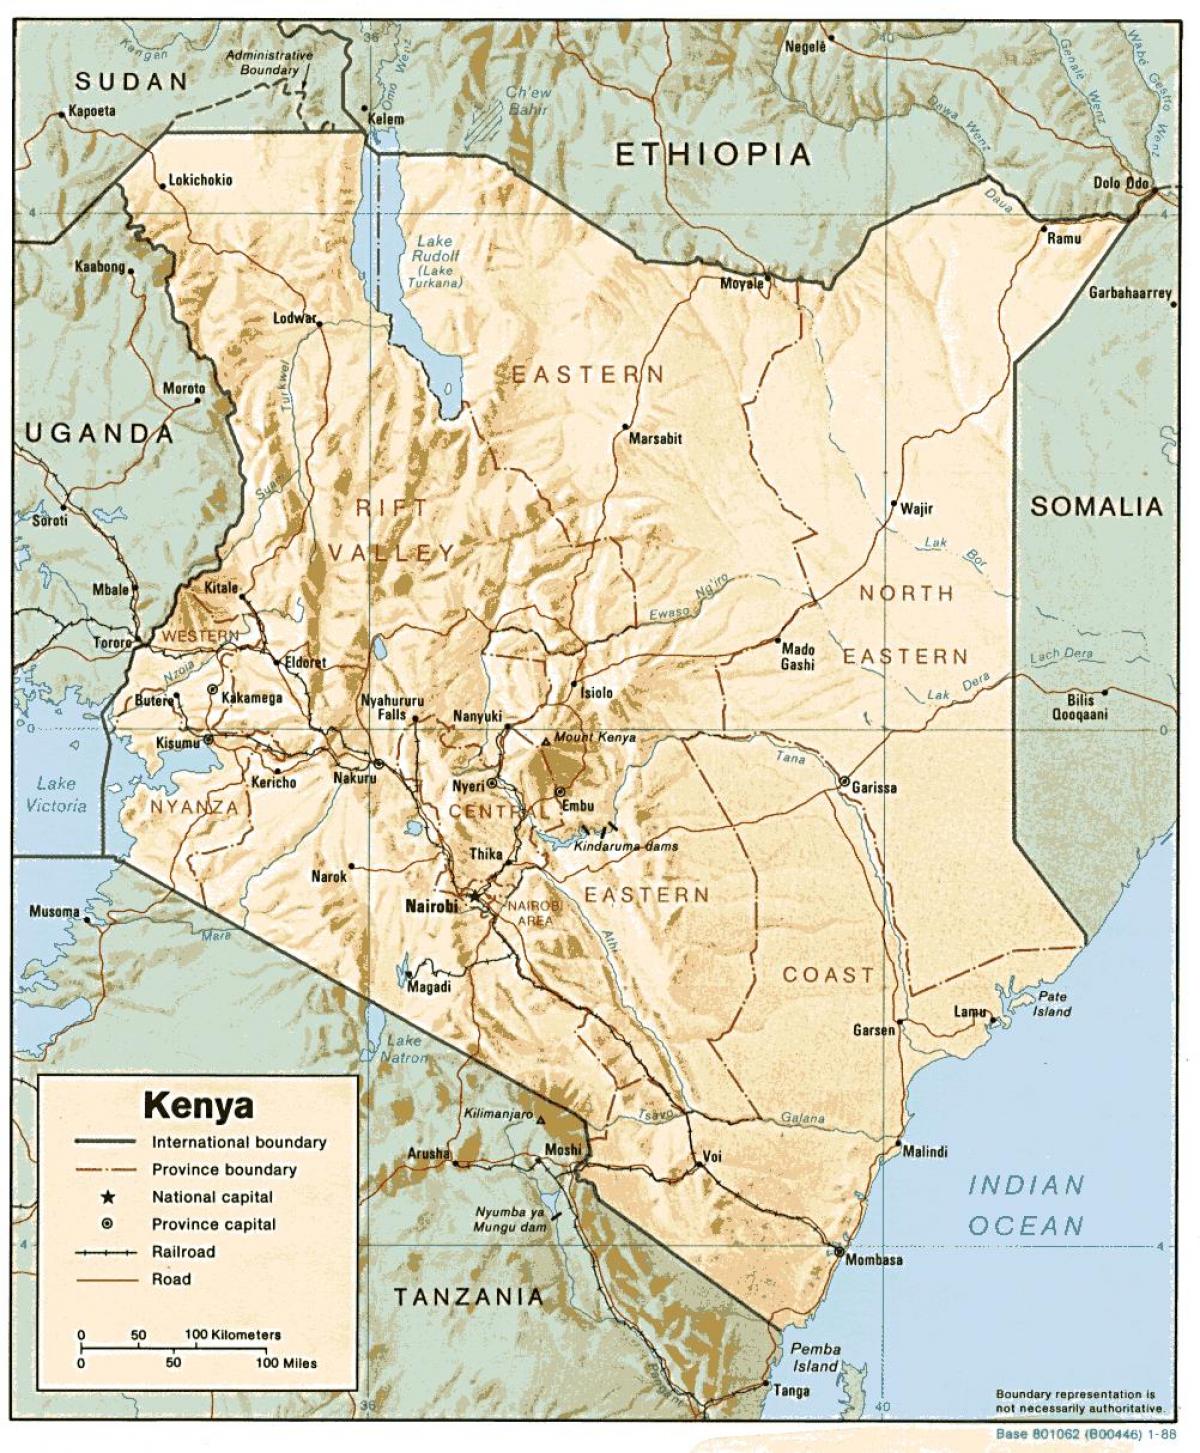 χάρτης της Κένυα δείχνει μεγάλες πόλεις